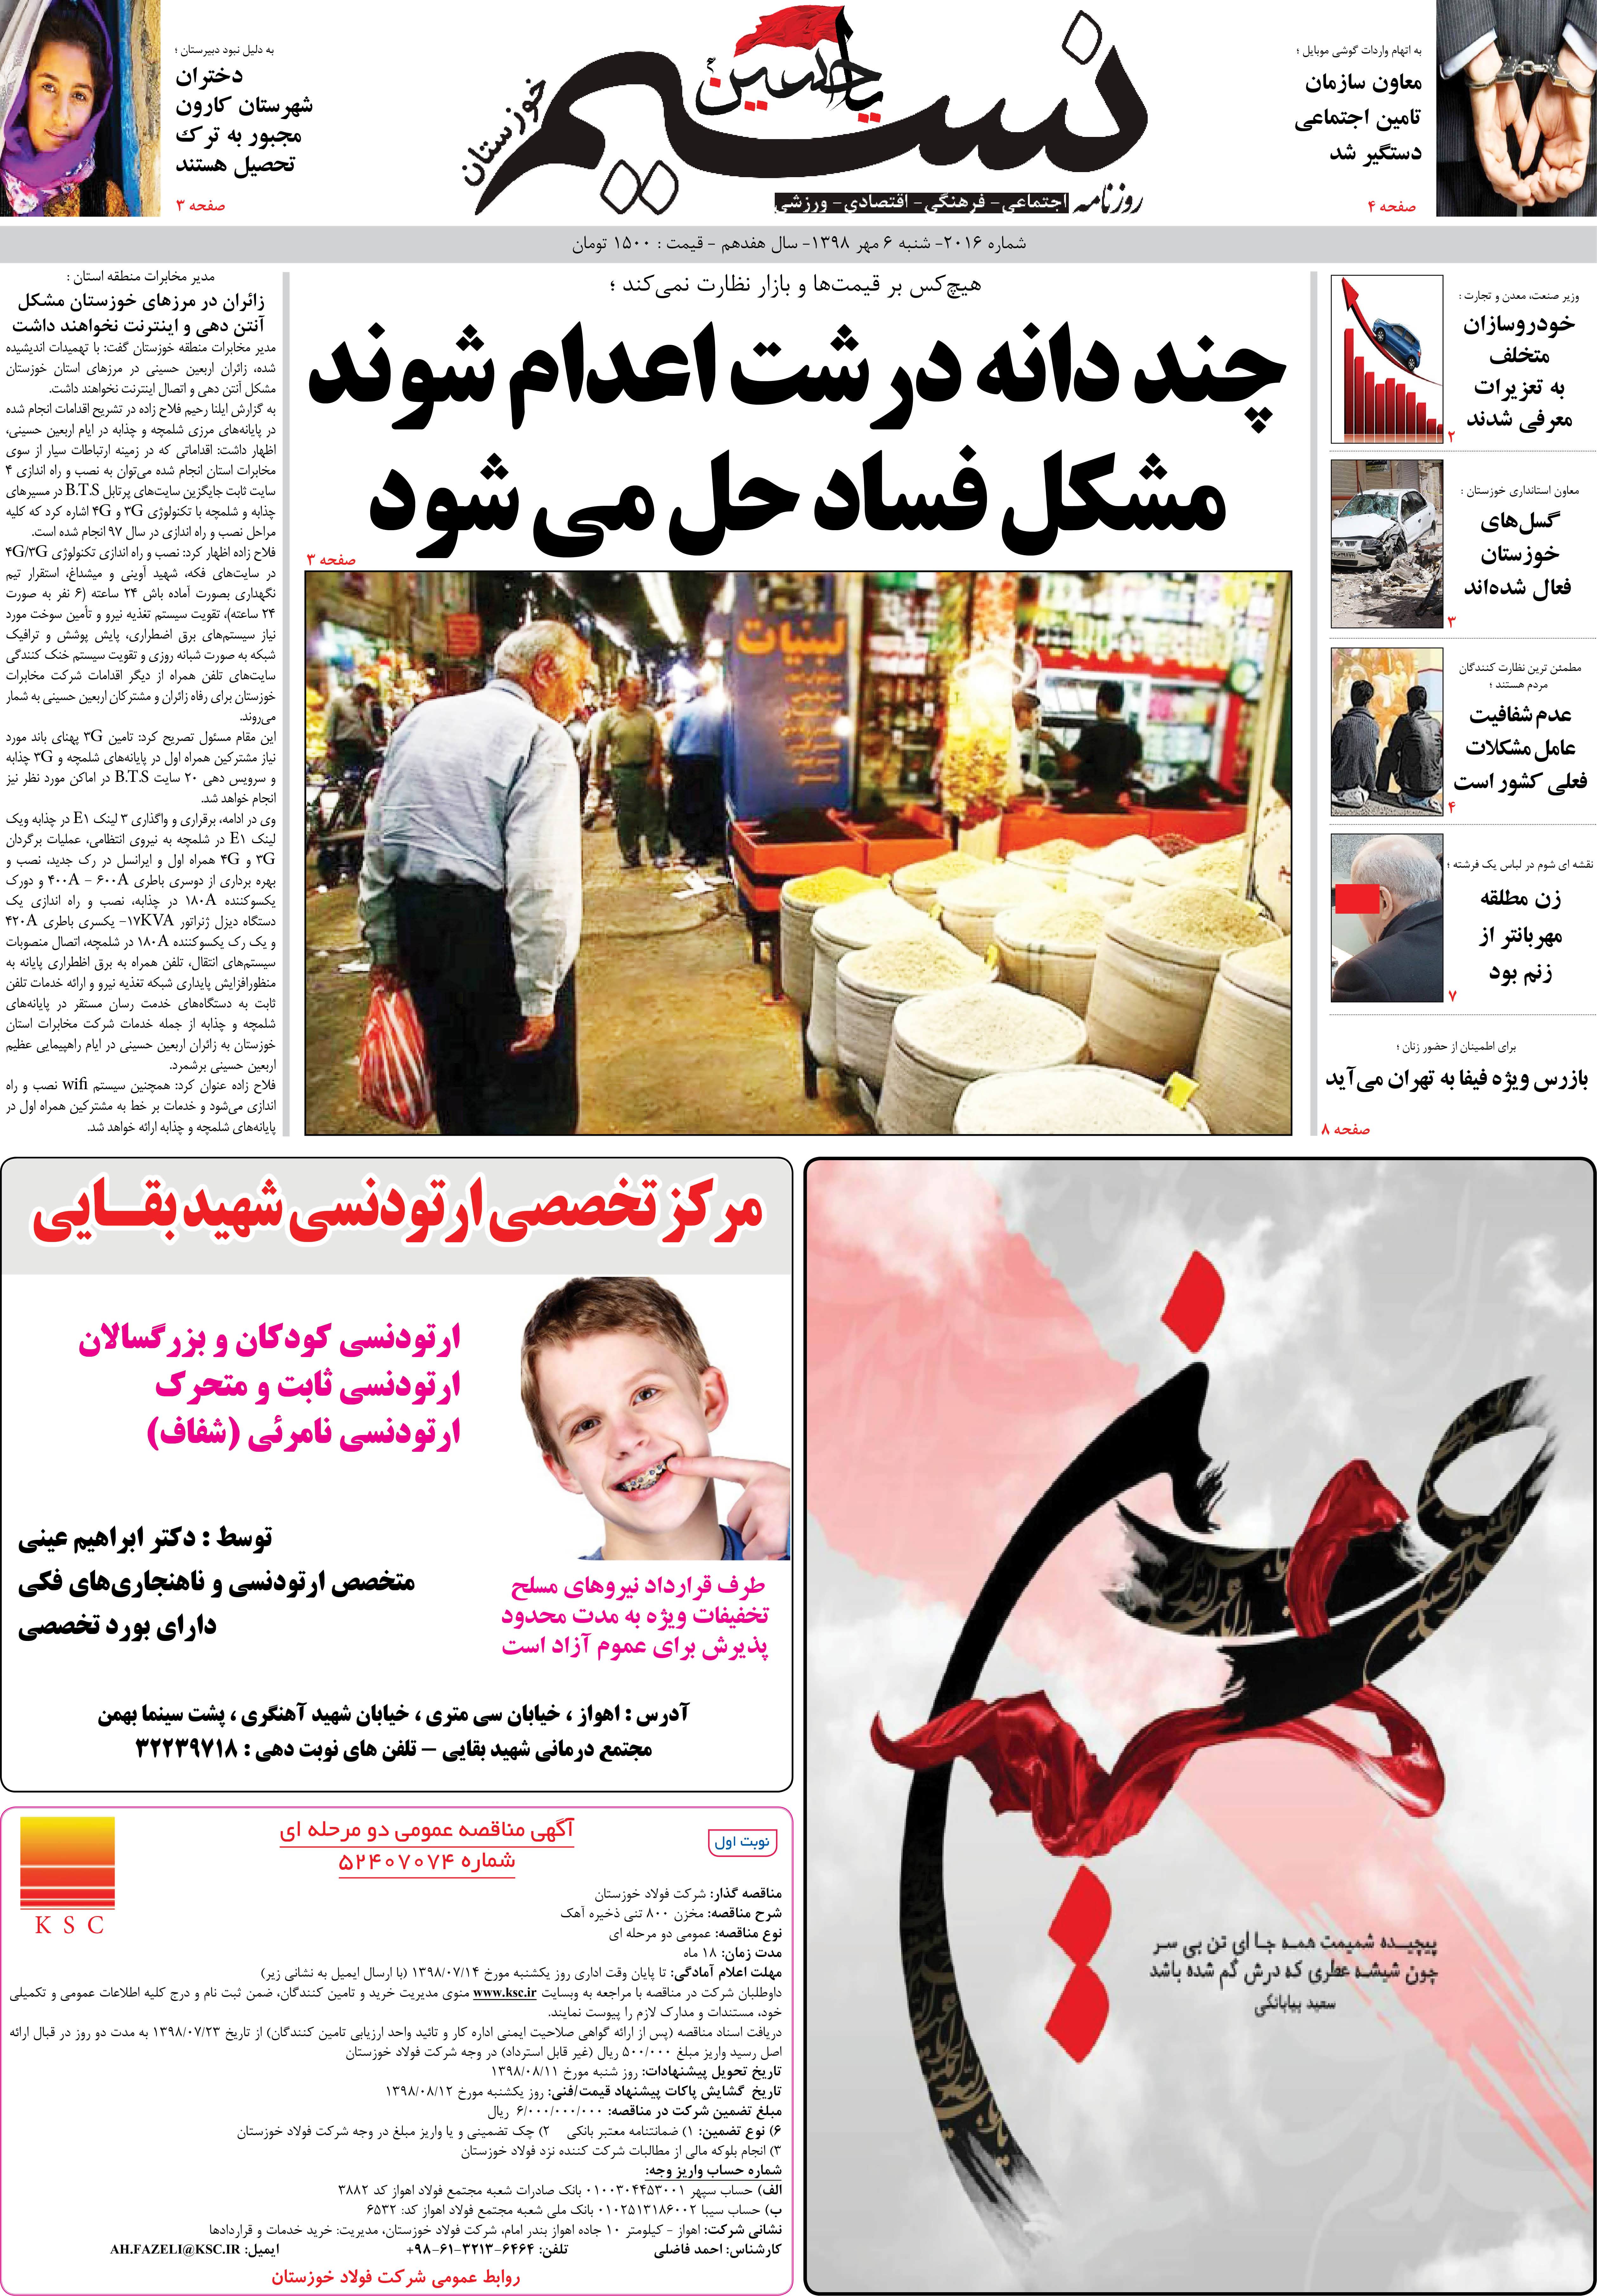 صفحه اصلی روزنامه نسیم شماره 2016 